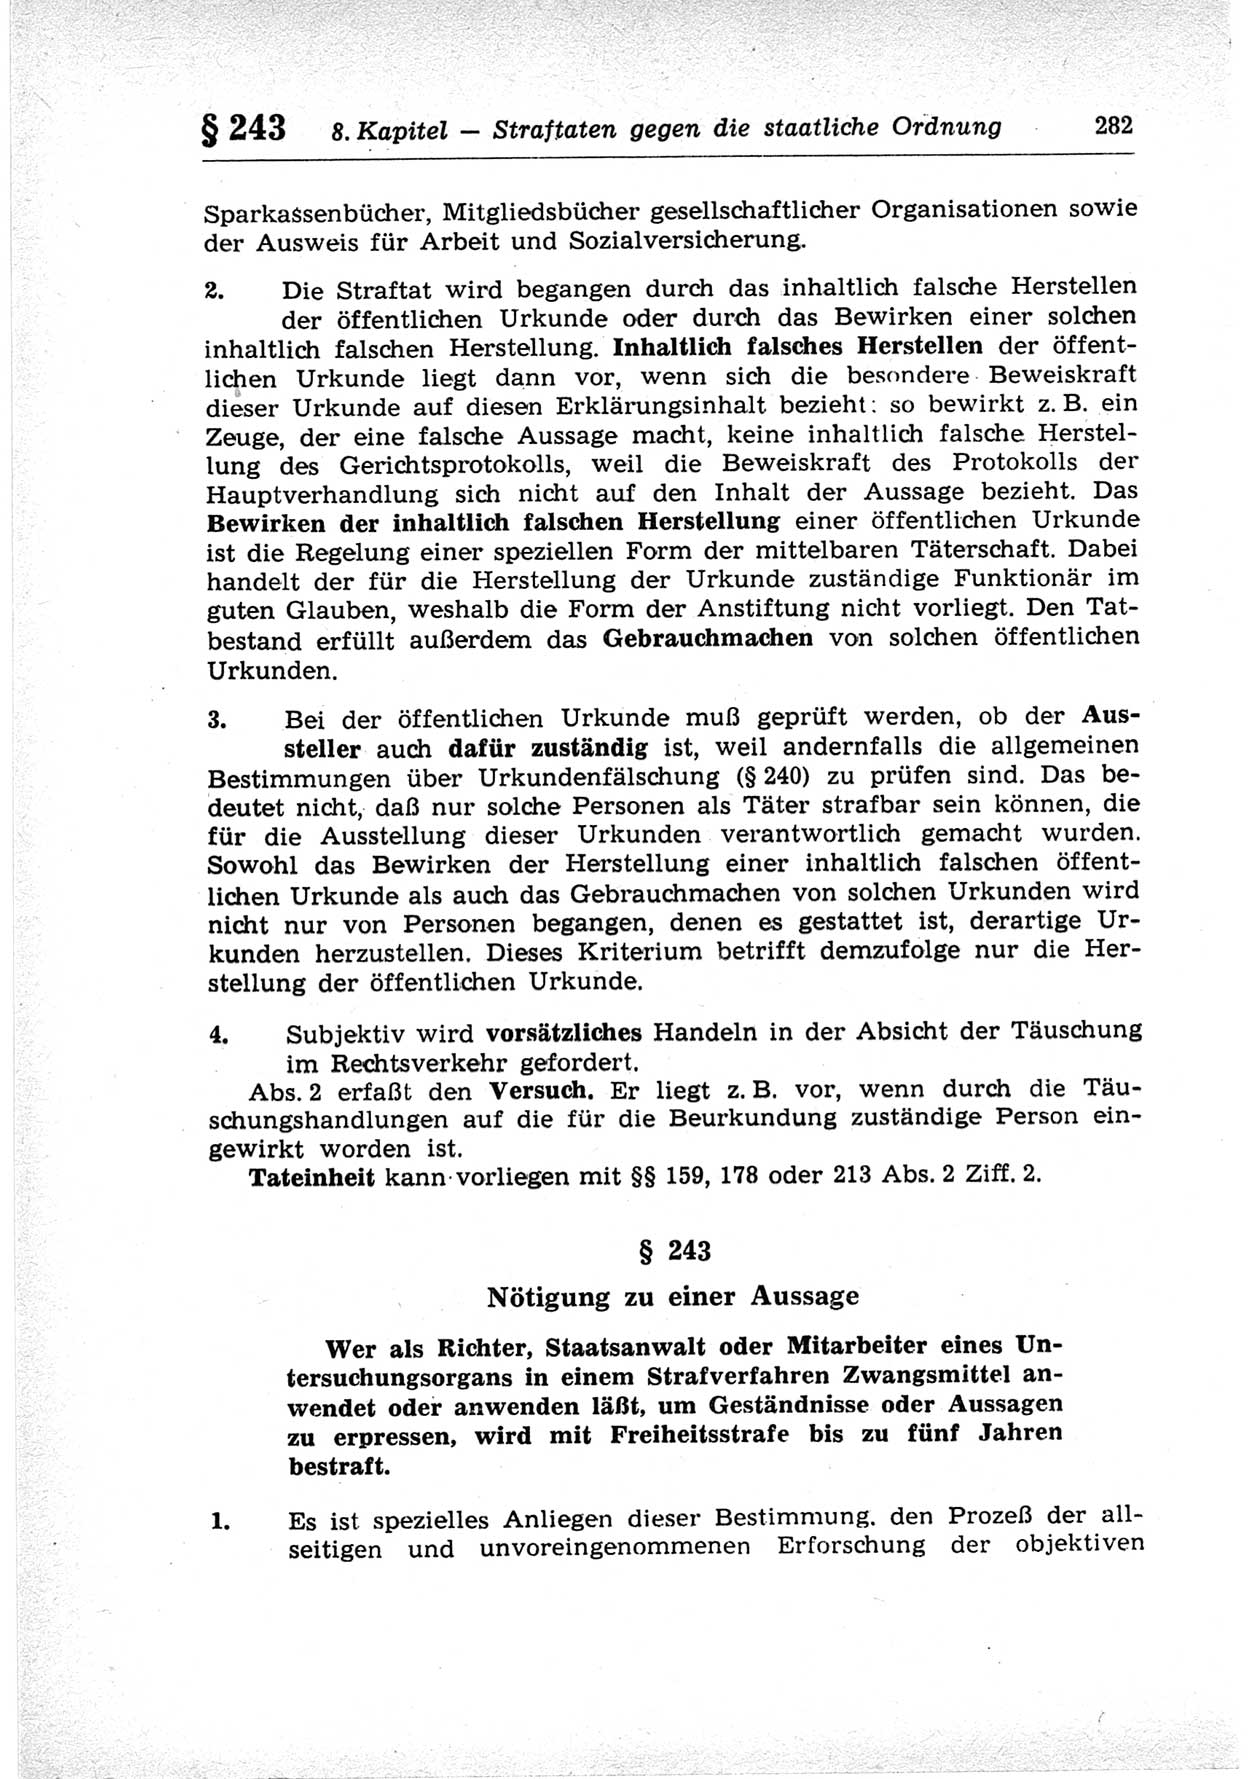 Strafrecht der Deutschen Demokratischen Republik (DDR), Lehrkommentar zum Strafgesetzbuch (StGB), Besonderer Teil 1969, Seite 282 (Strafr. DDR Lehrkomm. StGB BT 1969, S. 282)